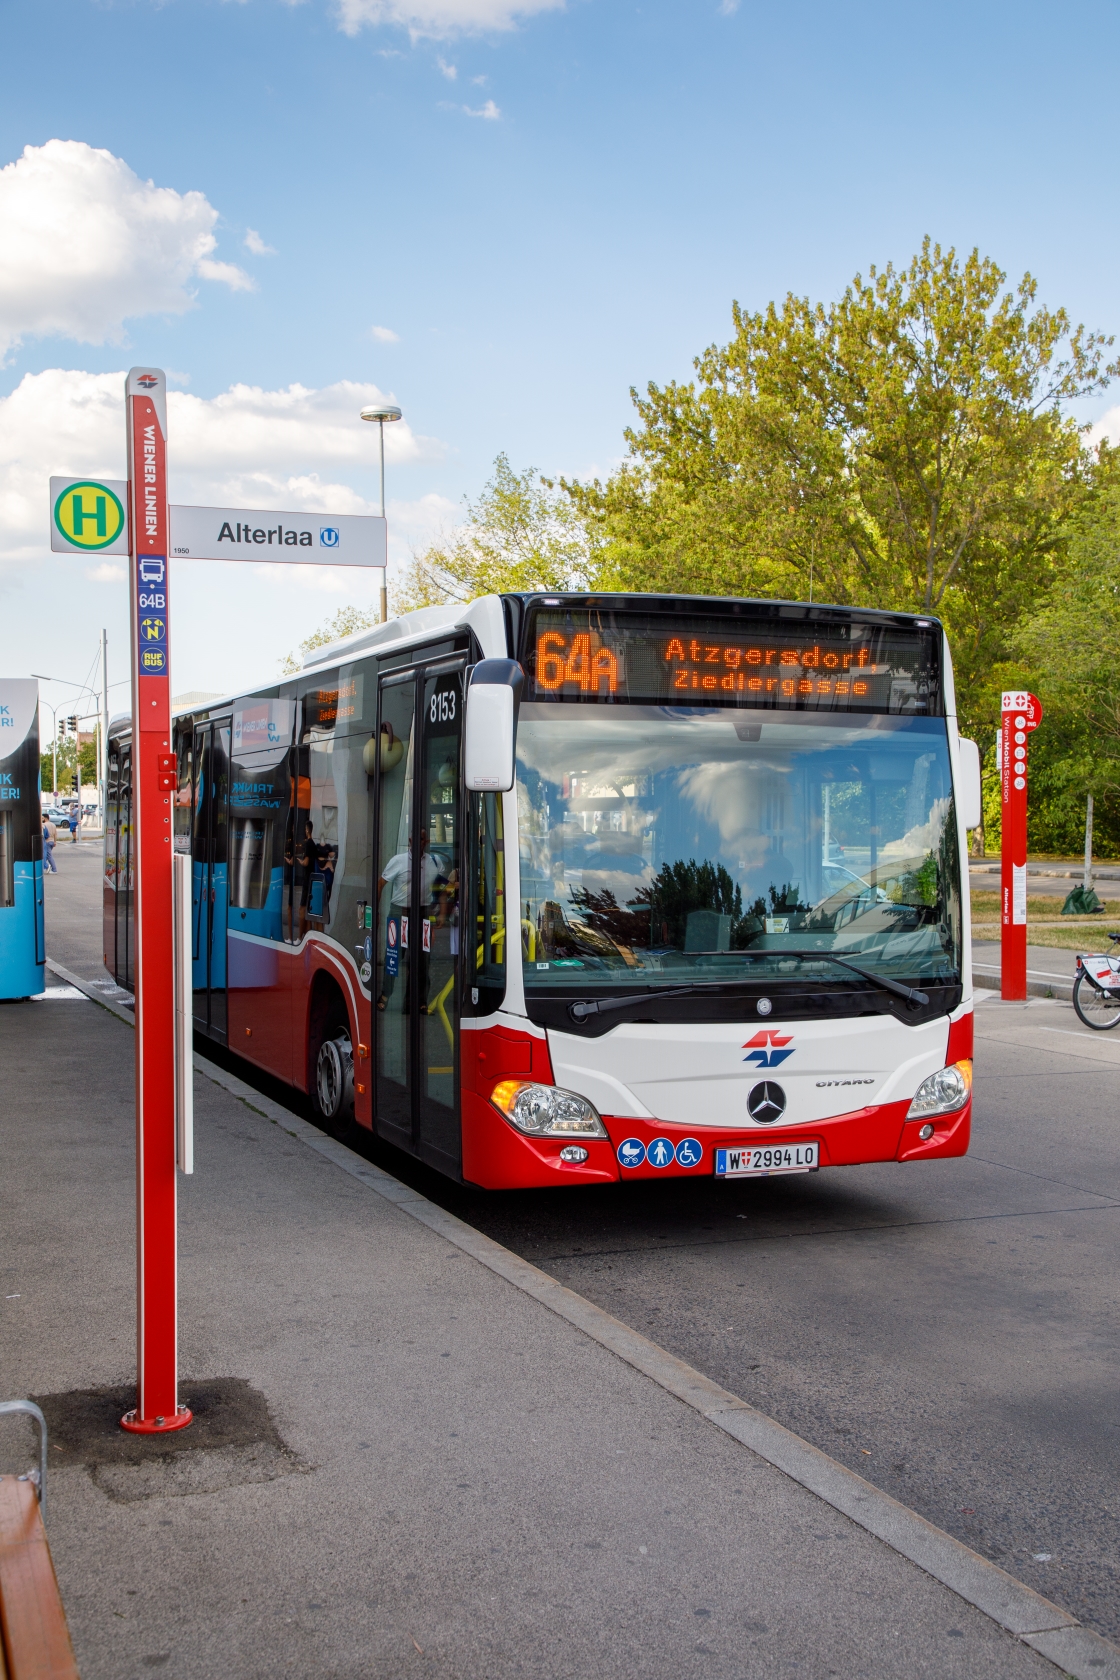 Die Wiener Linien erweitern ihr Busnetz in Liesing, um die Fahrgäste noch besser an U-, S- und Badner Bahn anzuschließen. Dafür werden zwei Buslinien neu geschaffen - 61B und 64B - und zwei bestehende Linien neu organisiert - 61A und 64A. 